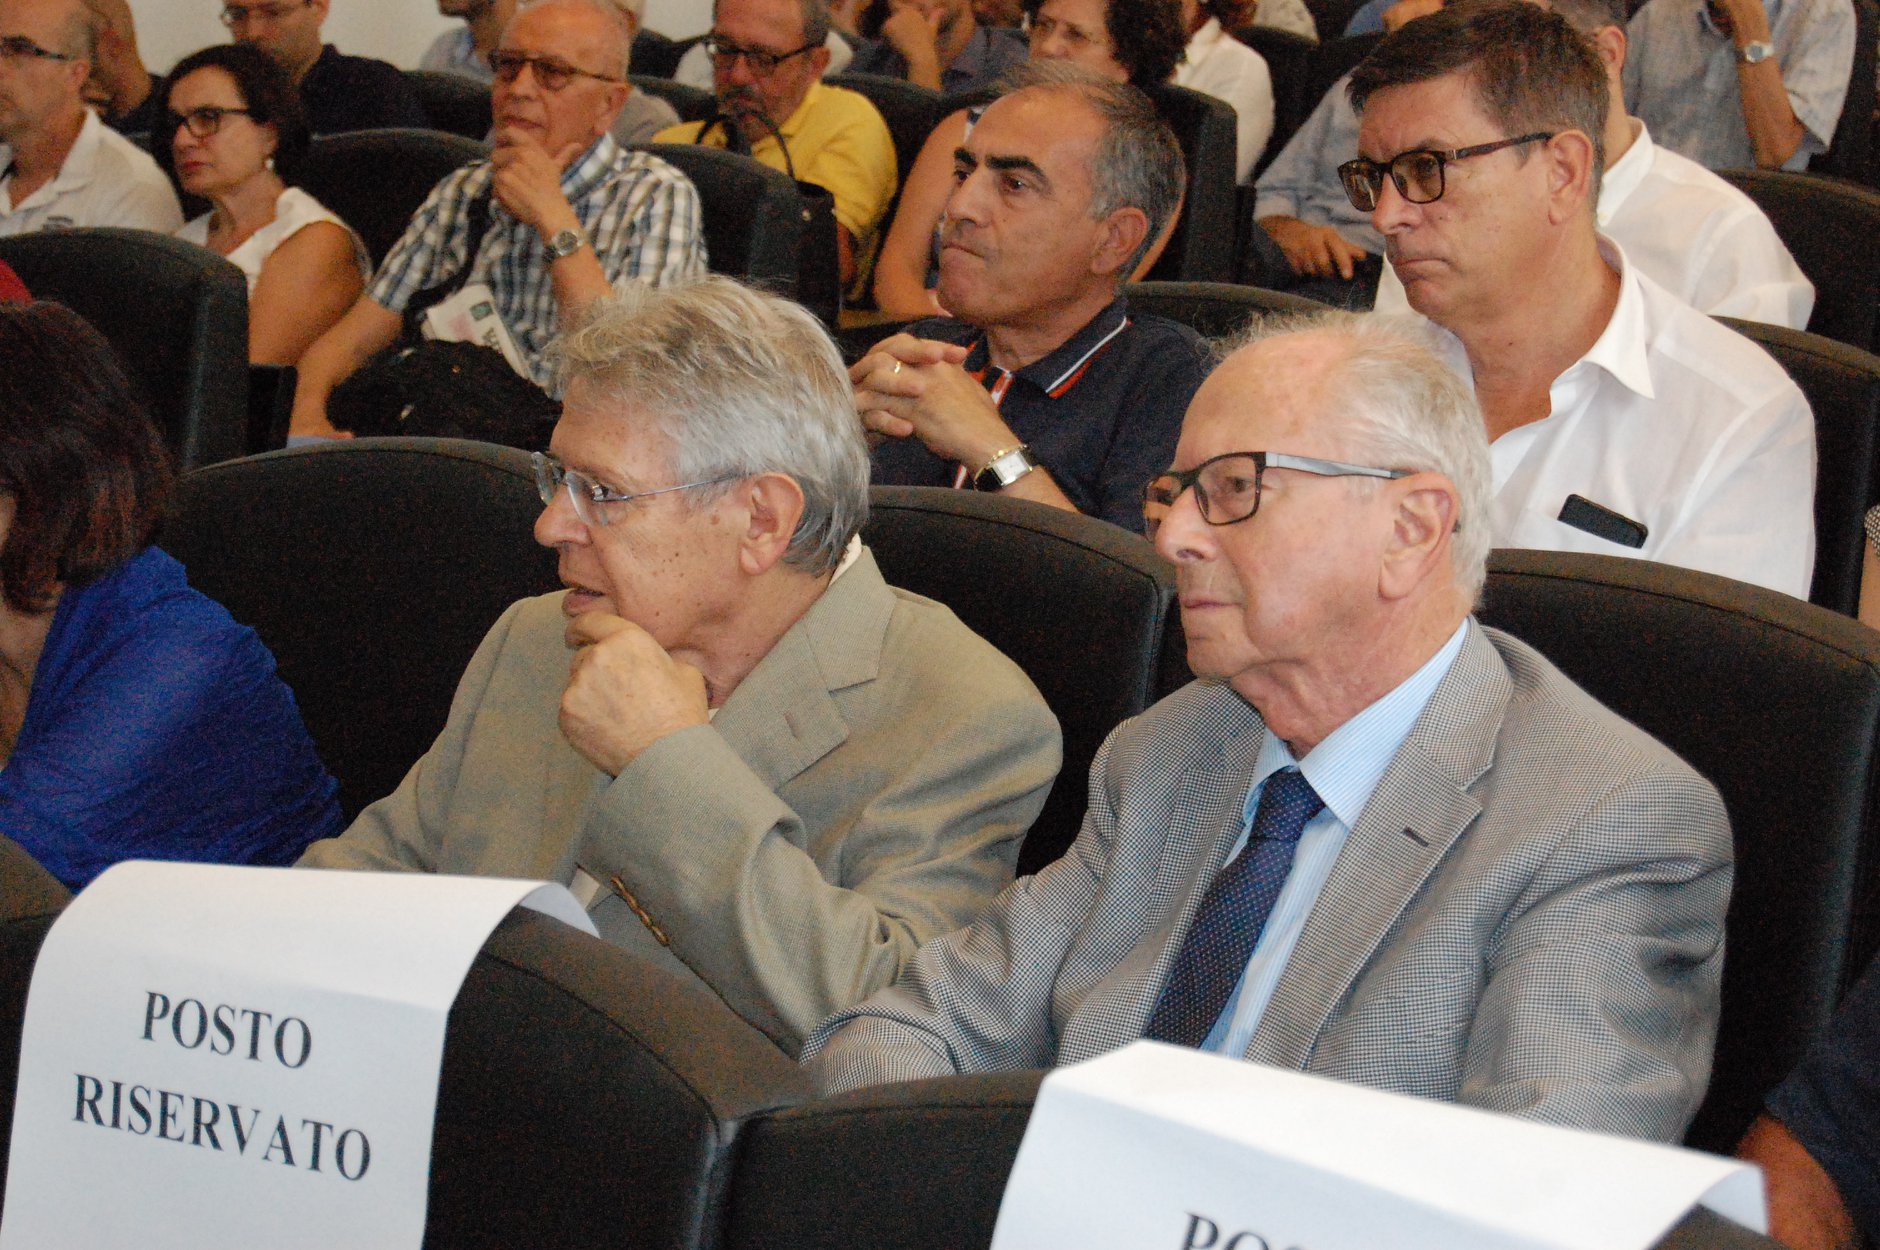 Le immagini dell'incontro con Carlo Cottarelli, nell'Aula Maria Lai della facoltà di Scienze Economiche, Giuridiche e Politiche.